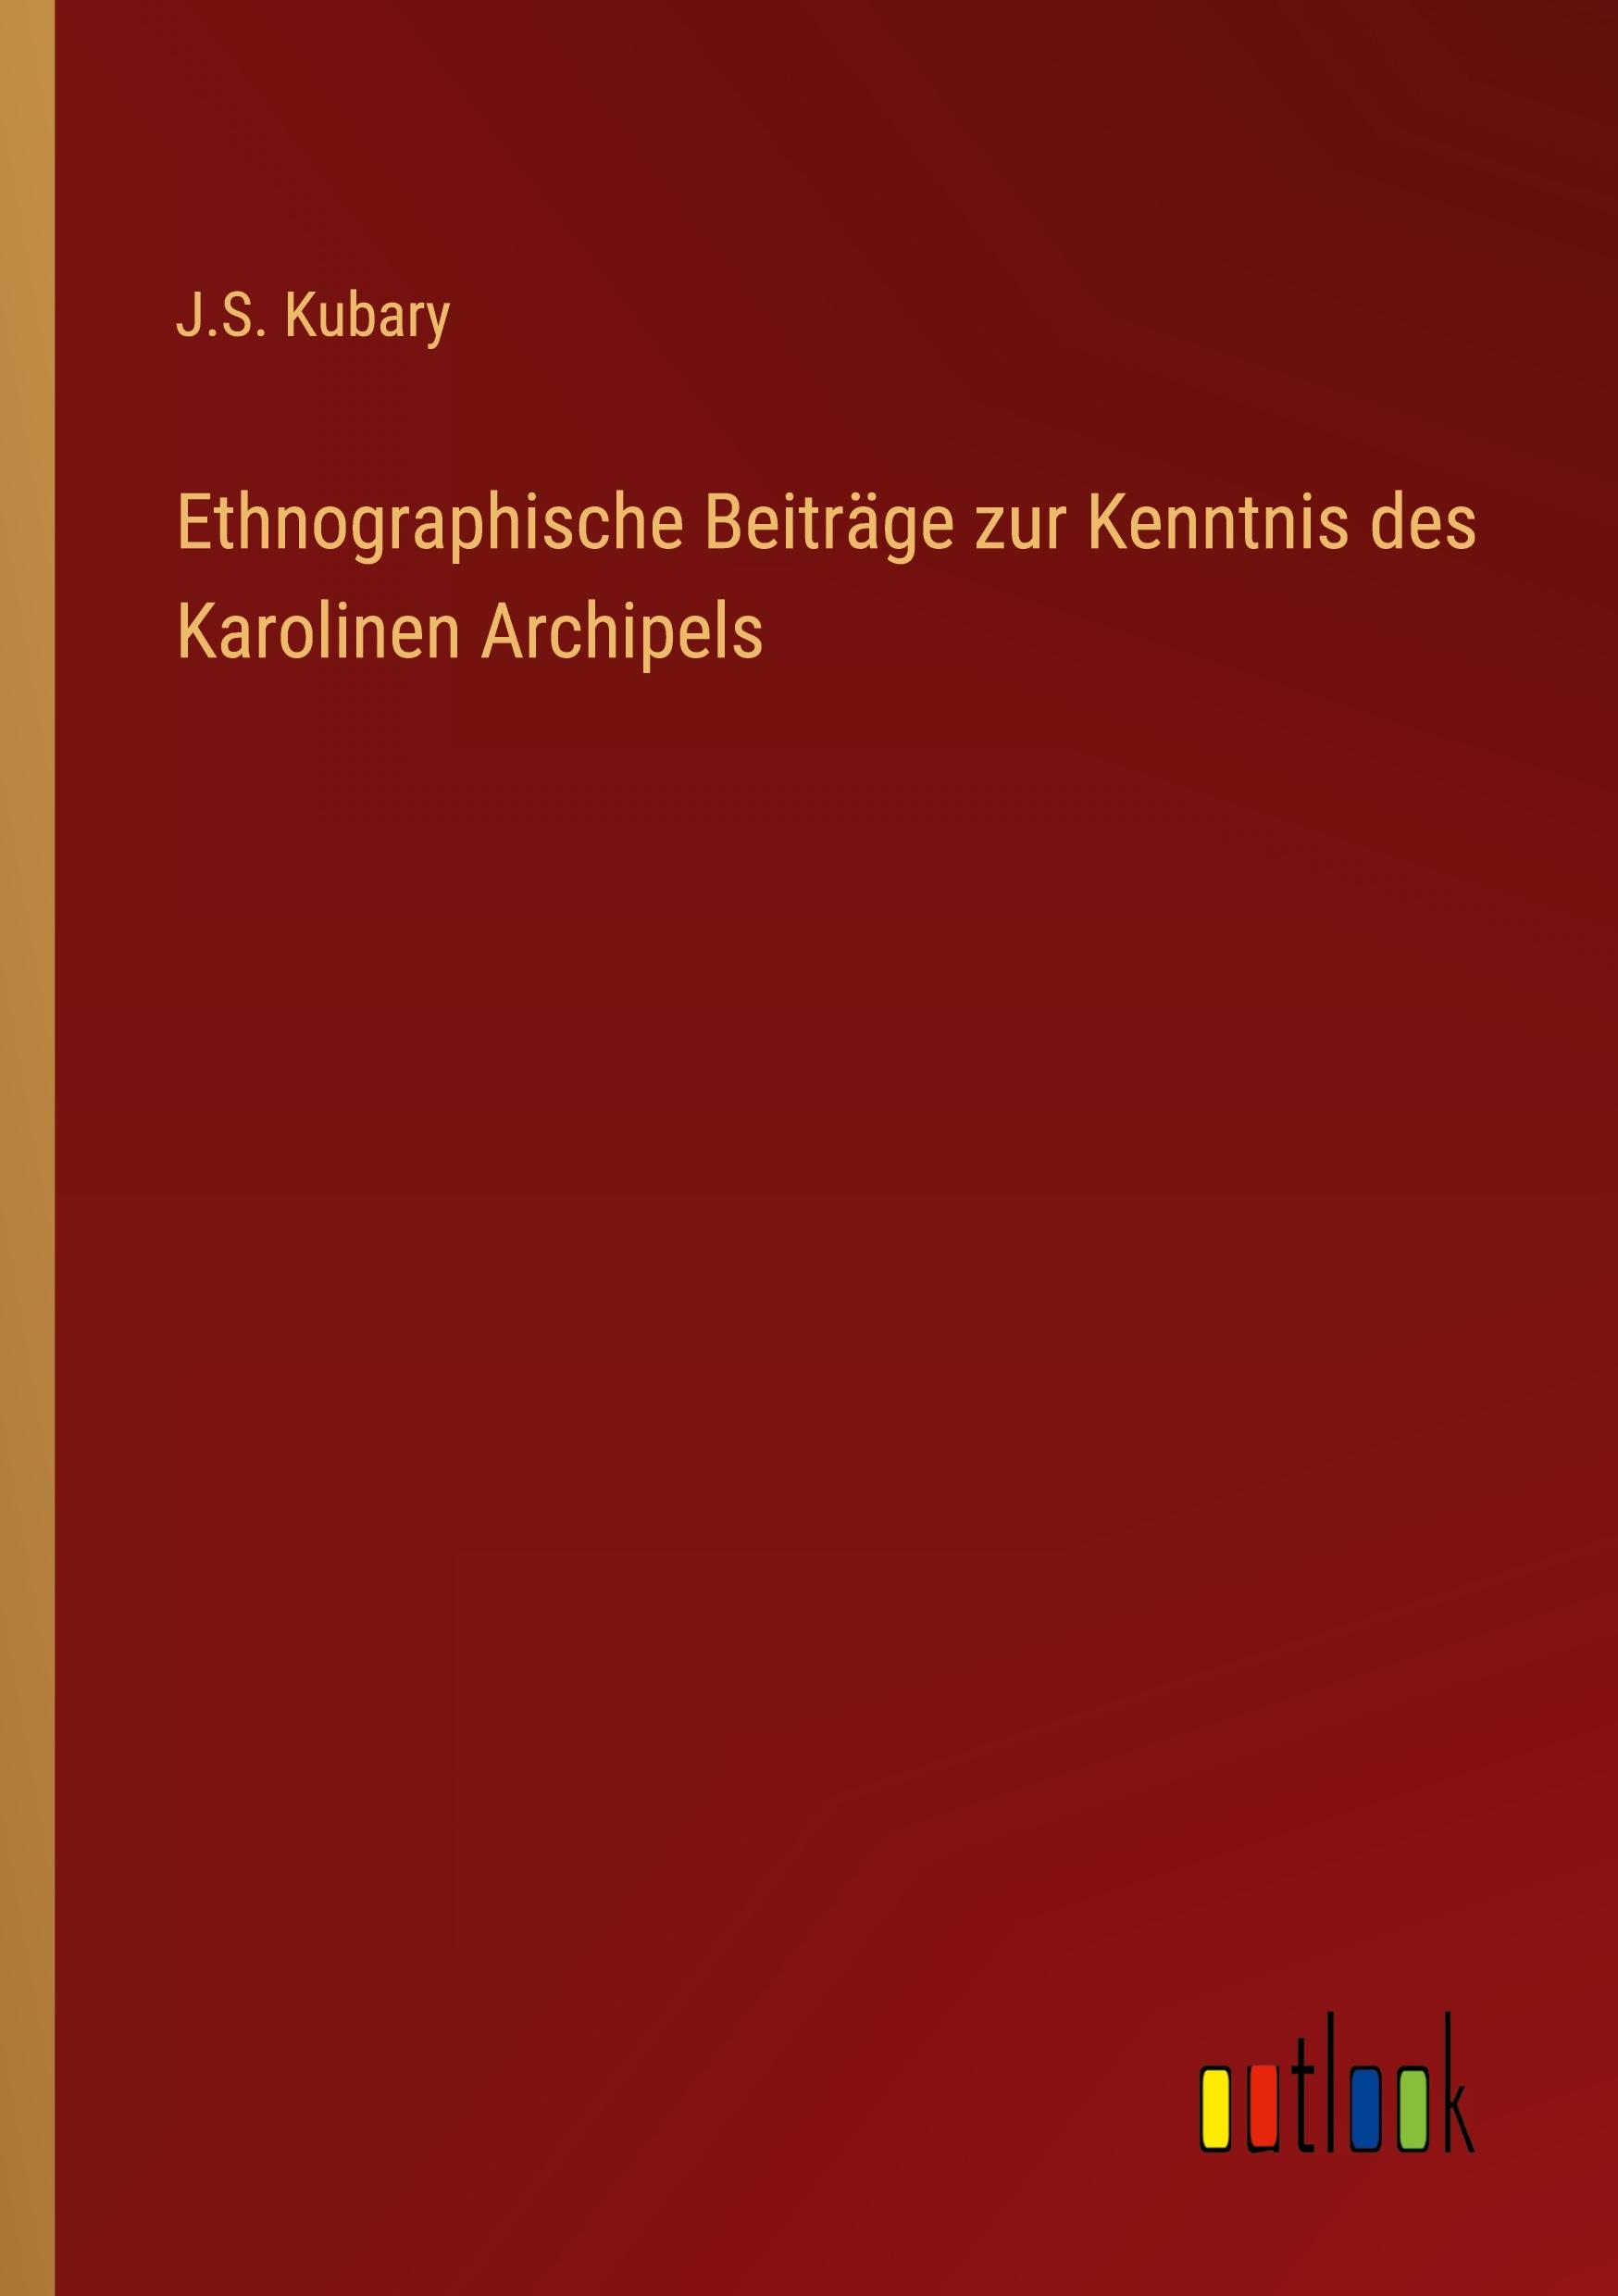 Ethnographische Beitraege zur Kenntnis des Karolinen Archipels - Kubary, J. S.